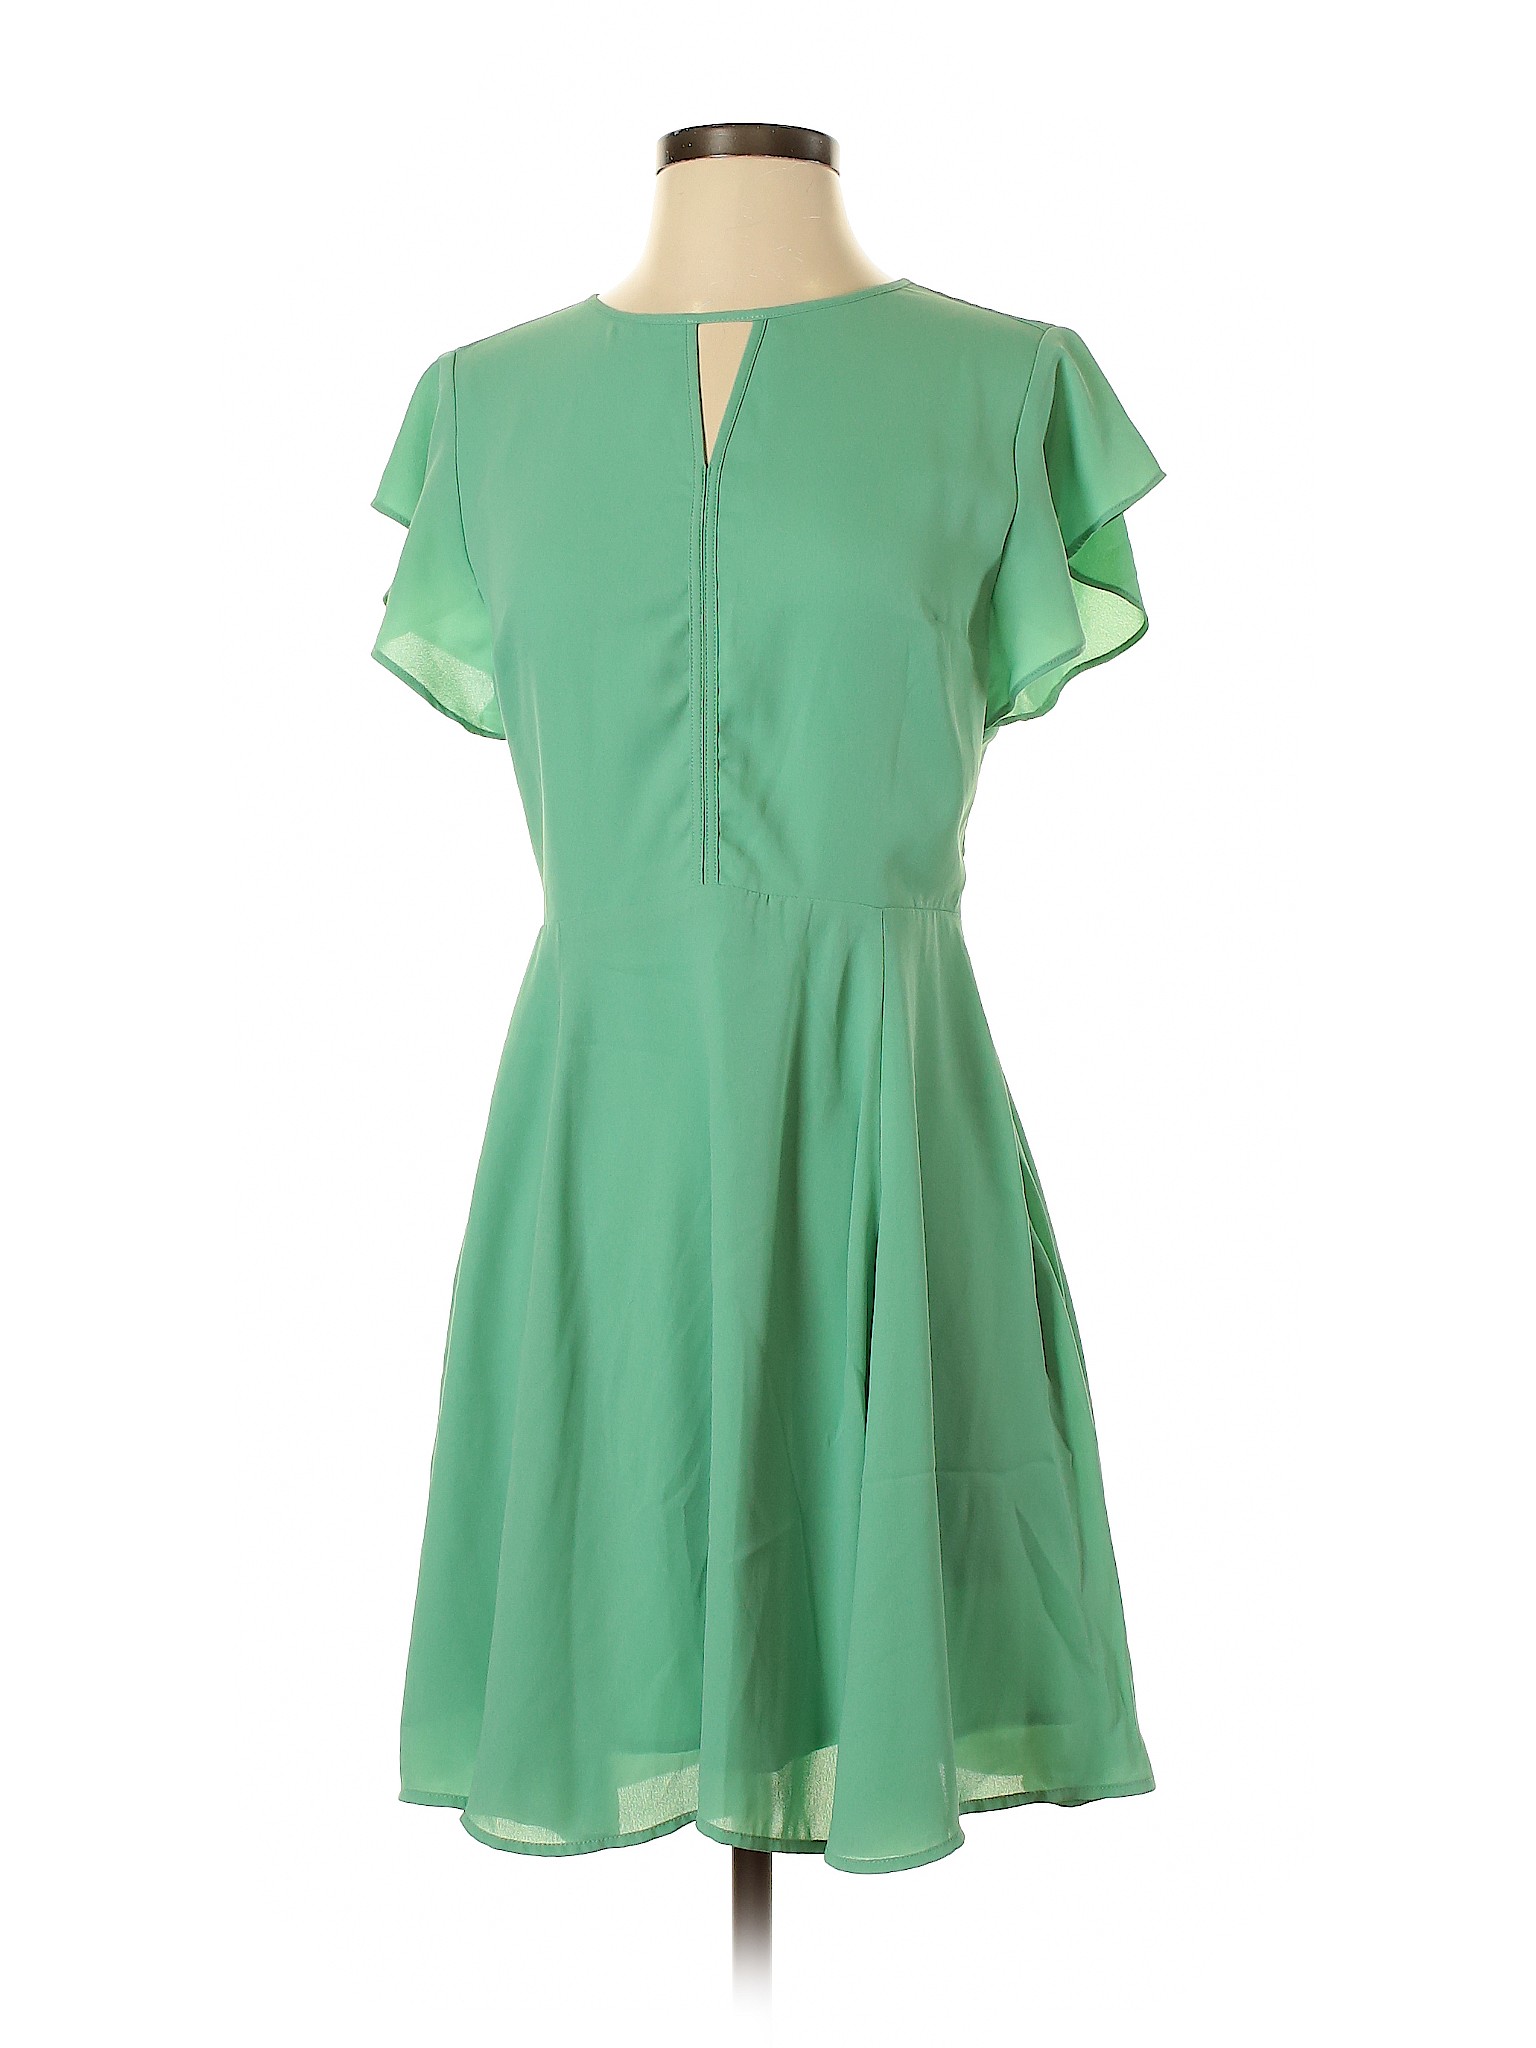 Banana Republic Factory Store Women Green Casual Dress 0 | eBay